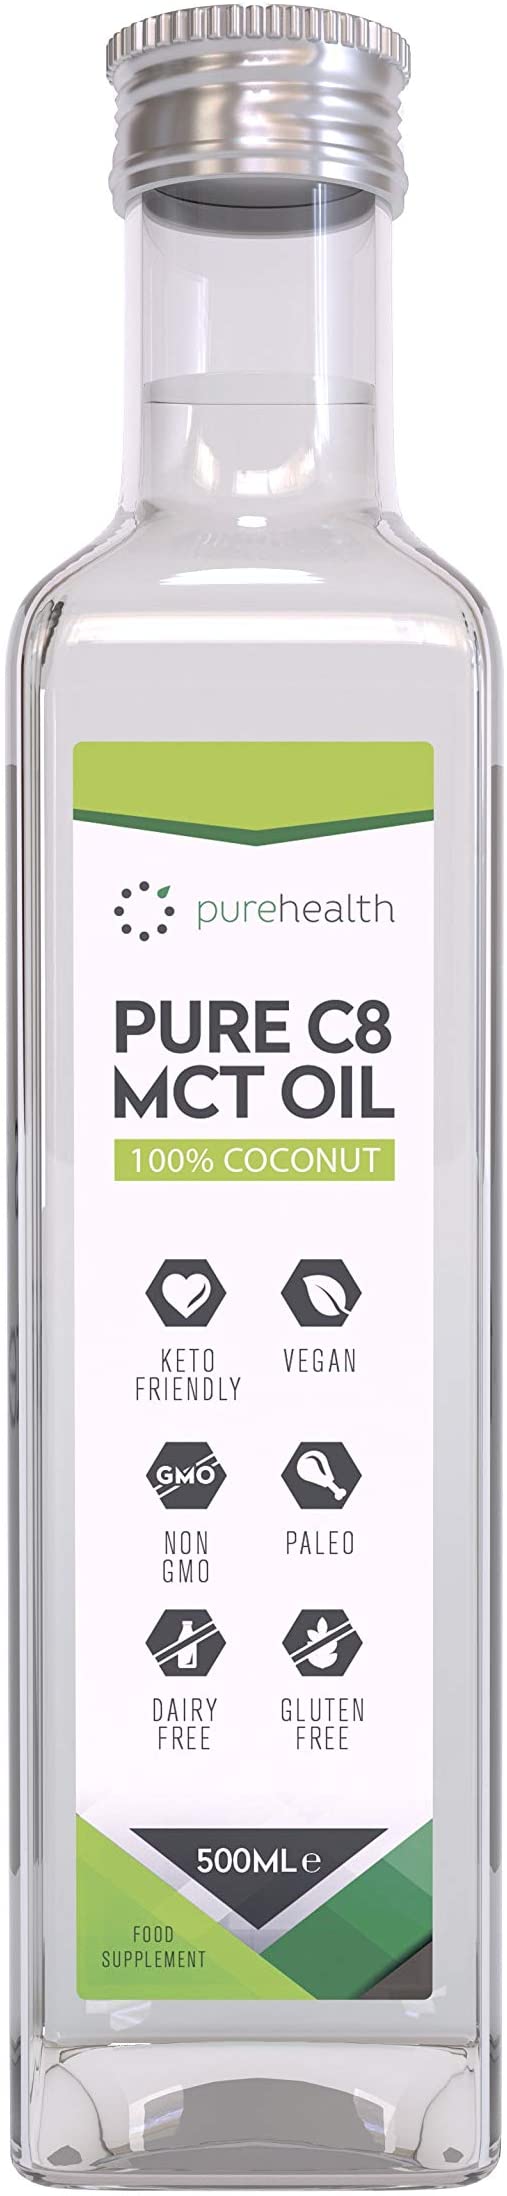  Huile de noix de coco MCT 100 Acide caprylique C8  Paleo  Cetone  Vegetalien  Sans gluten  Bouteille sans BPA 500ml Coco C8 